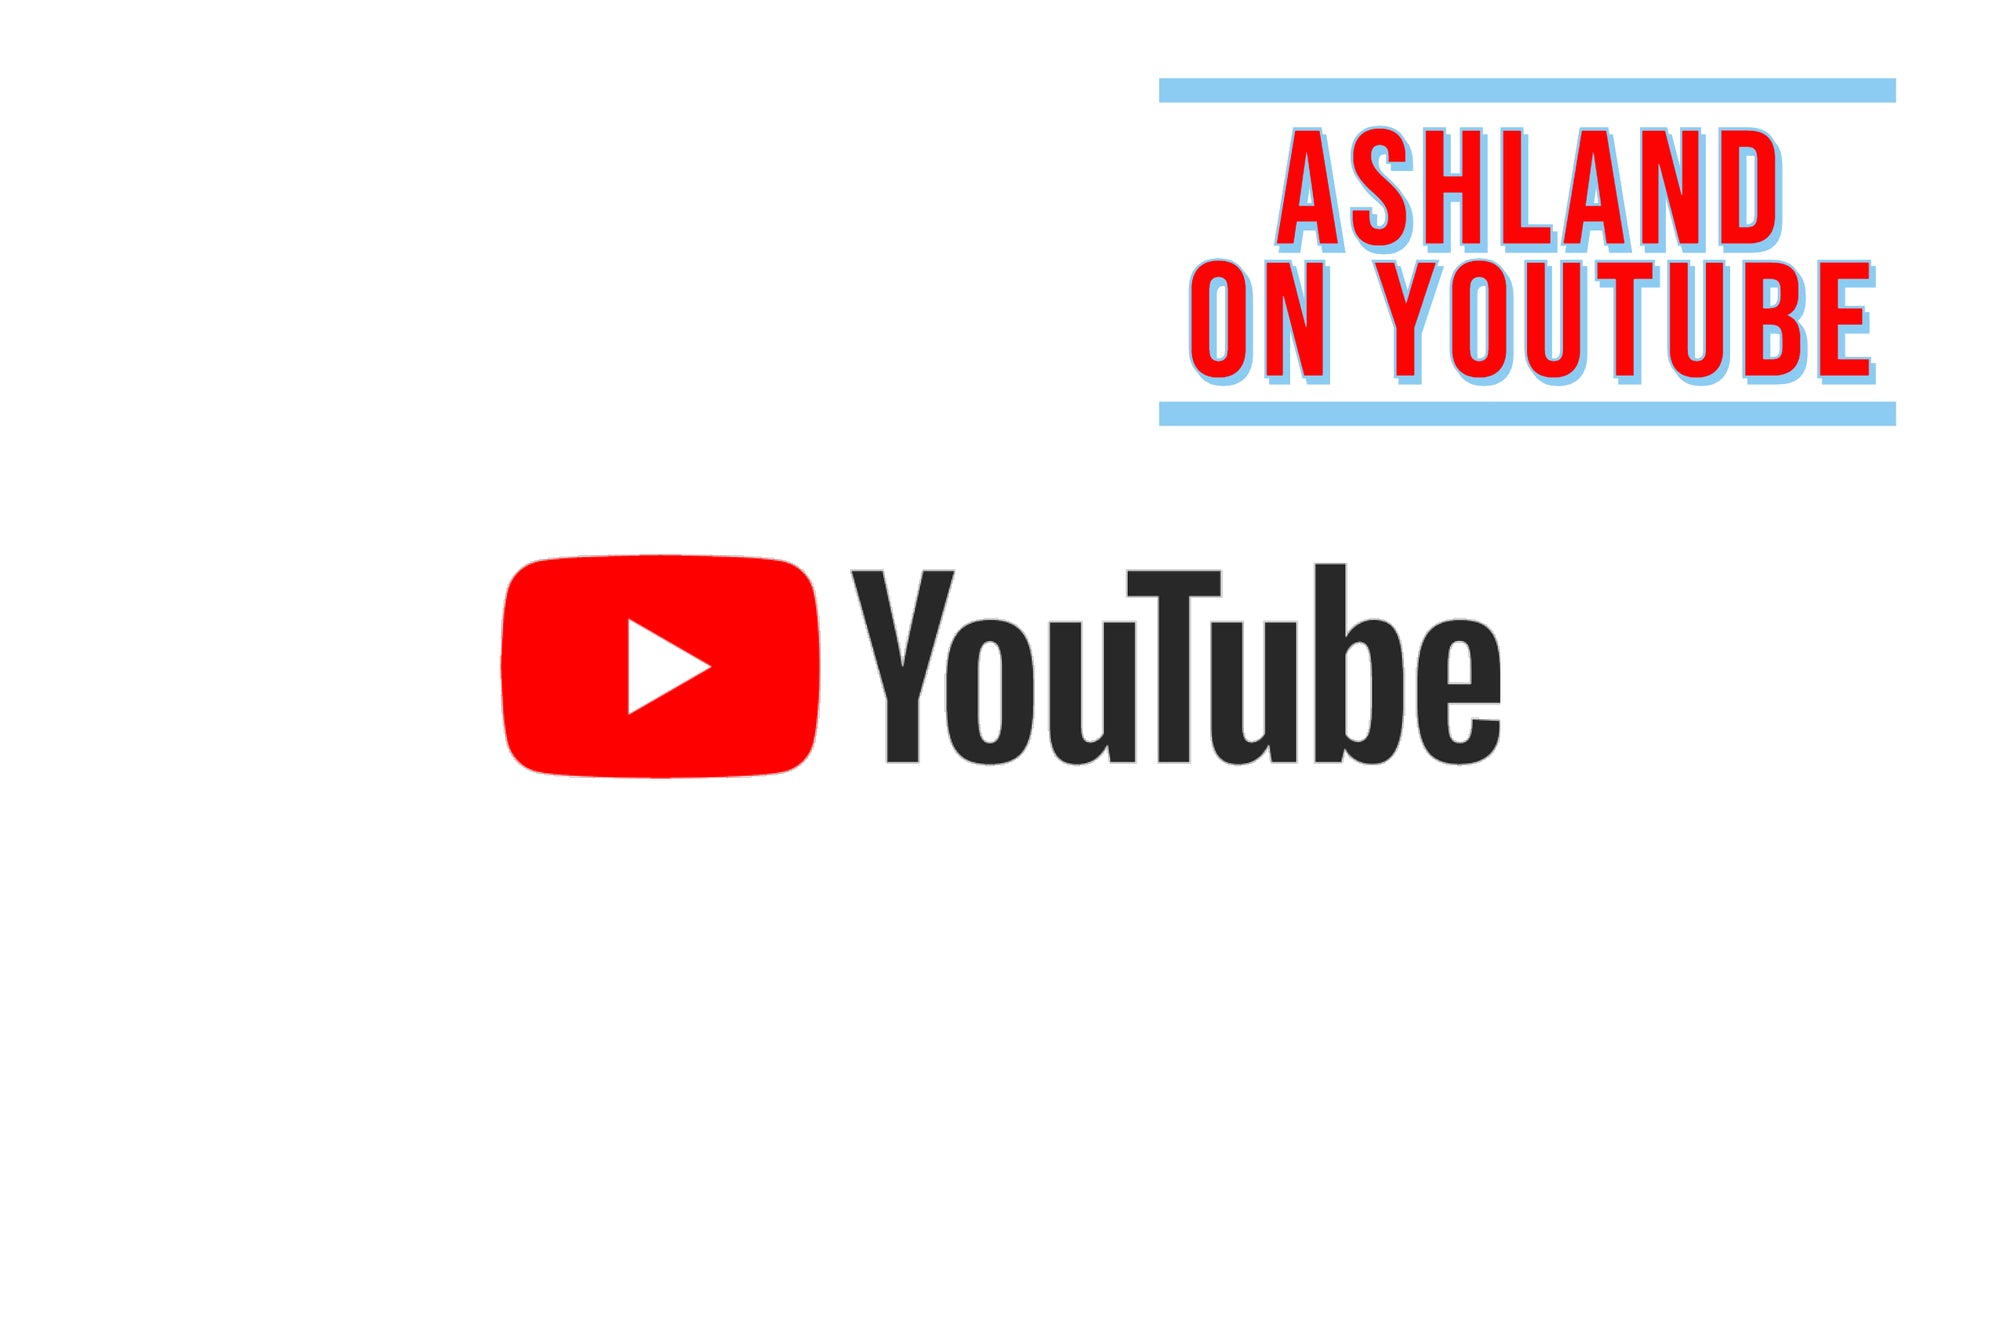 Ashland now on YouTube